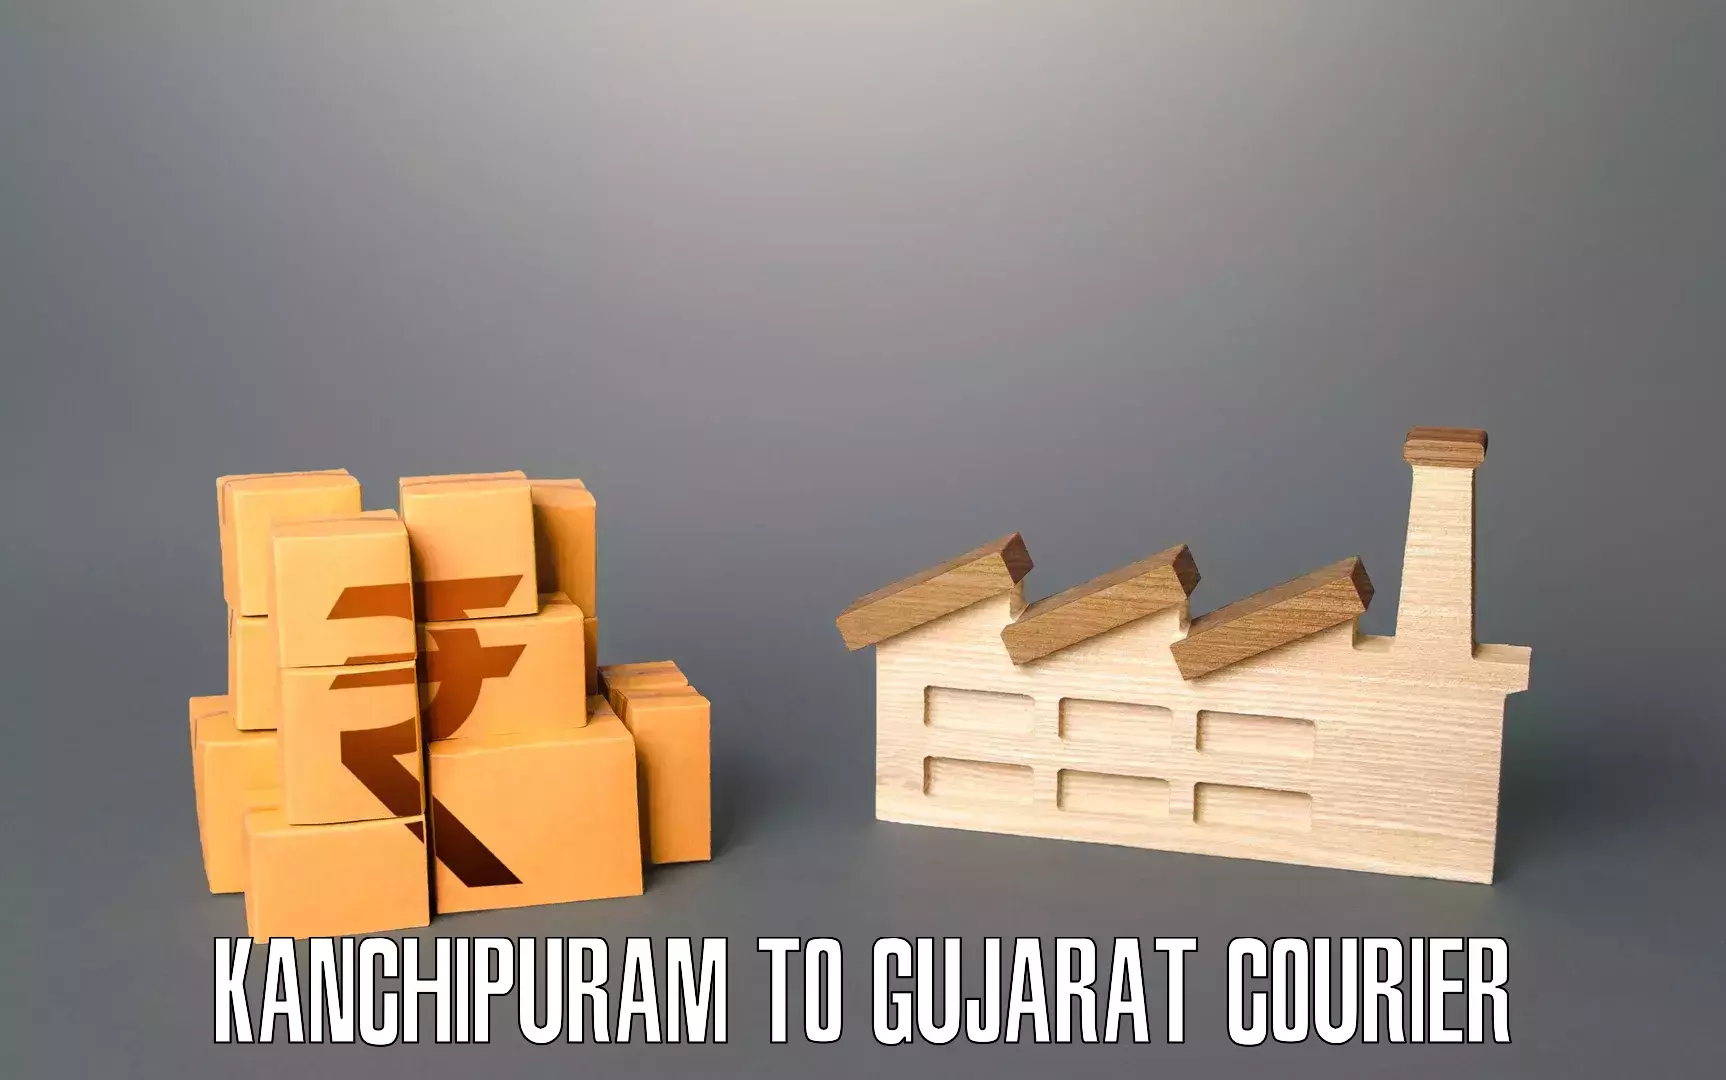 Furniture transport experts Kanchipuram to Tarapur